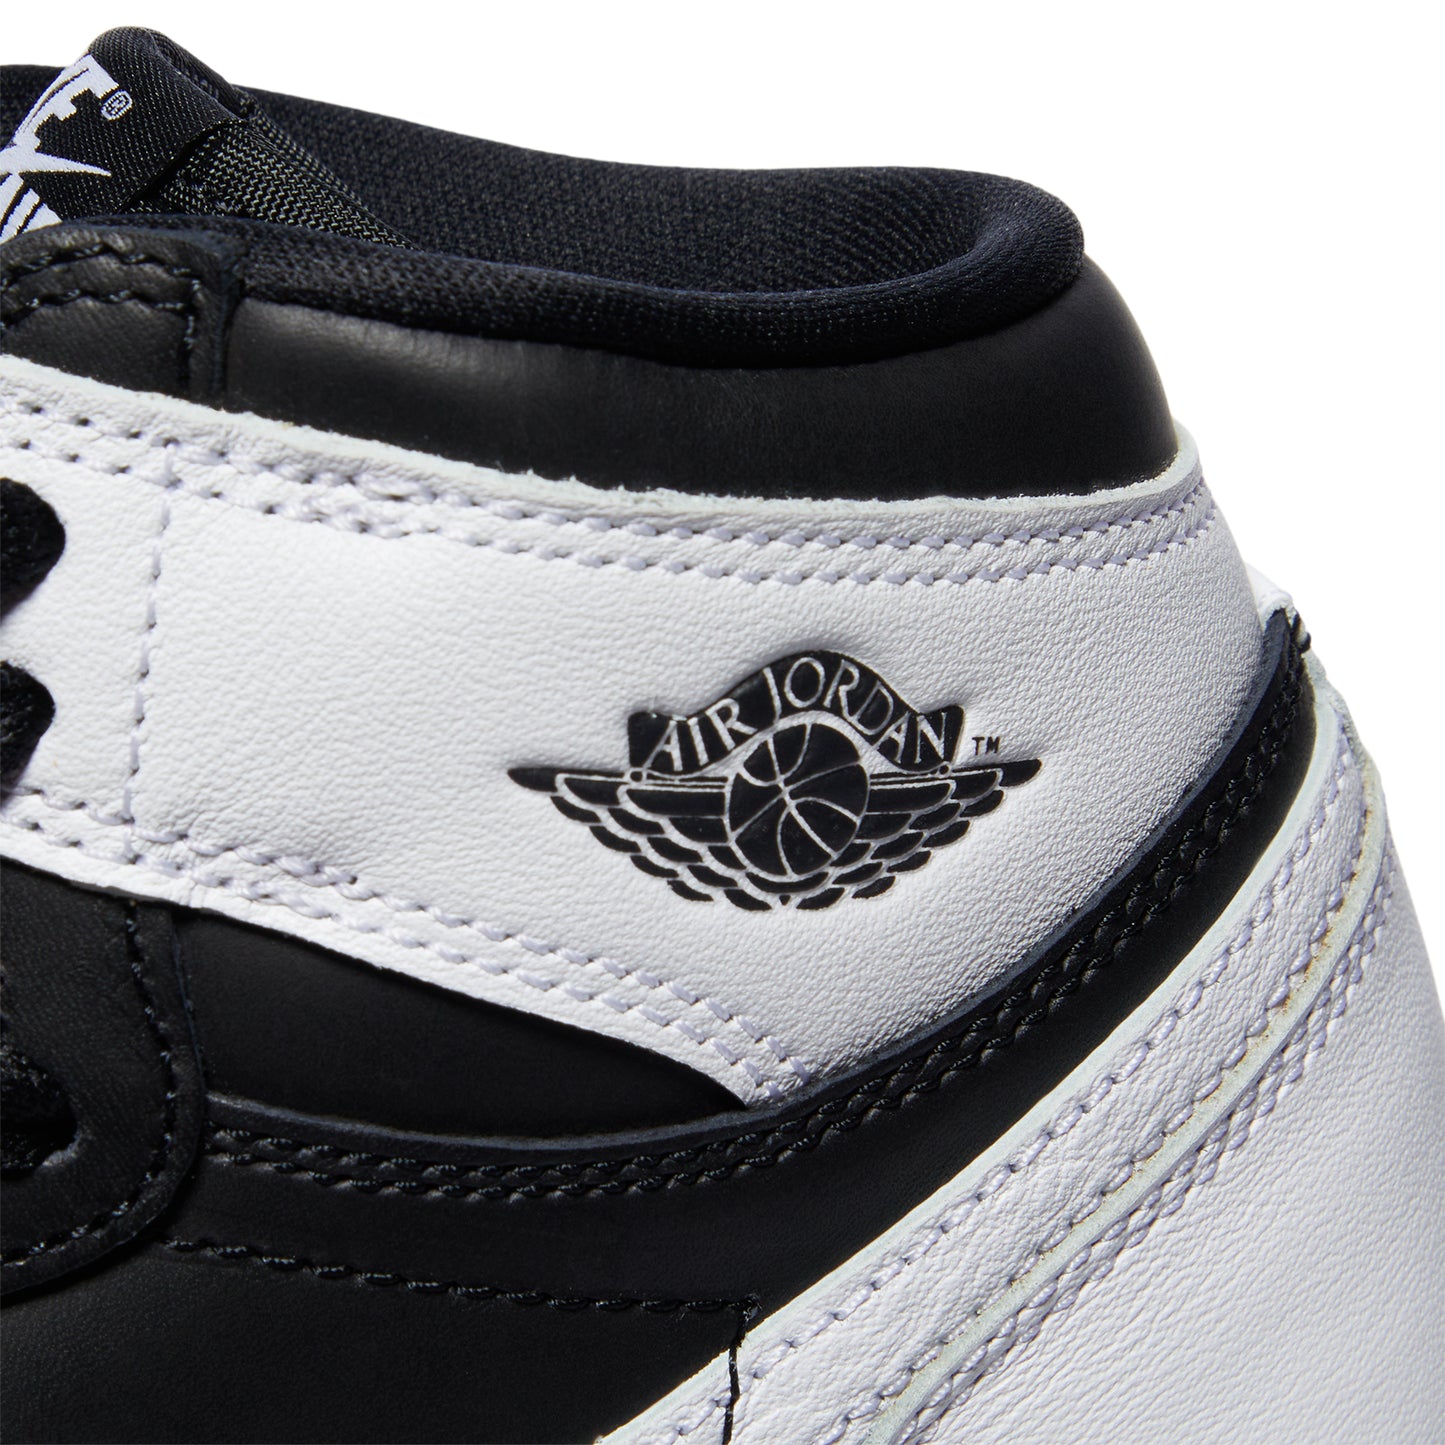 Air Jordan 1 Kids Retro High OG (Black/White)